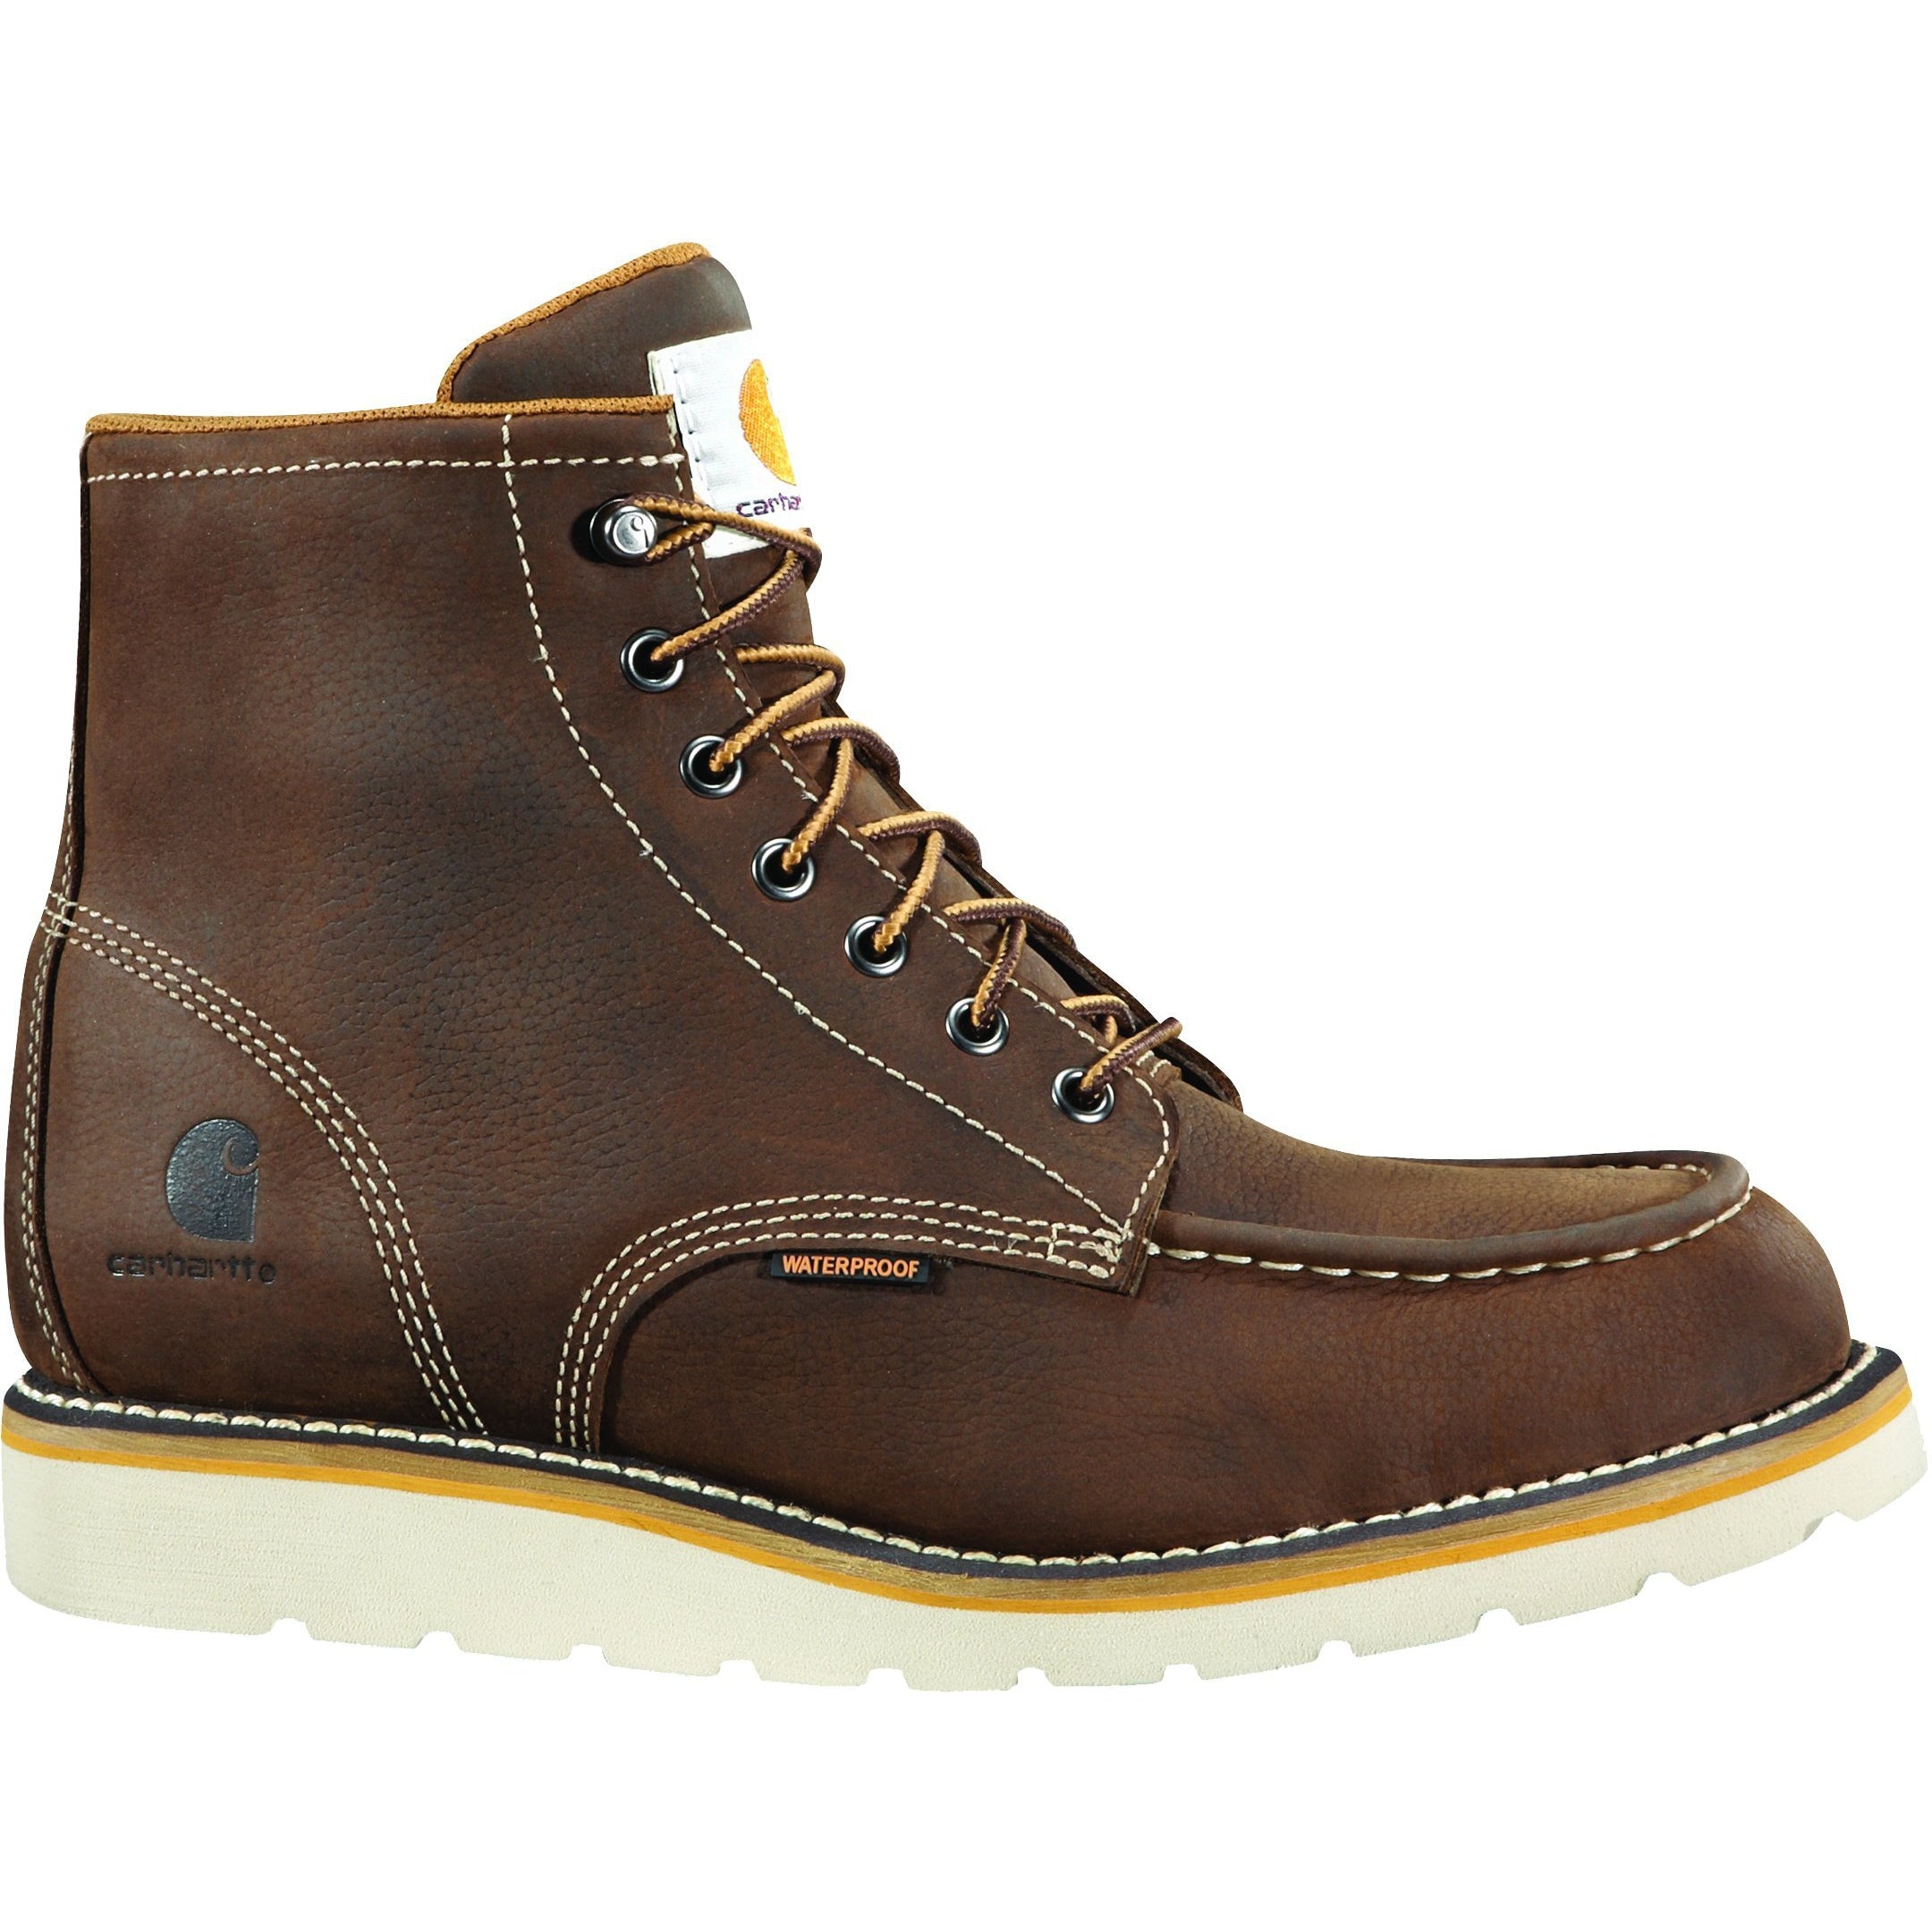 Carhartt Men's 6" Steel Toe Waterproof Wedge Work Boot Brown - CMW6295 8 / Medium / Brown - Overlook Boots